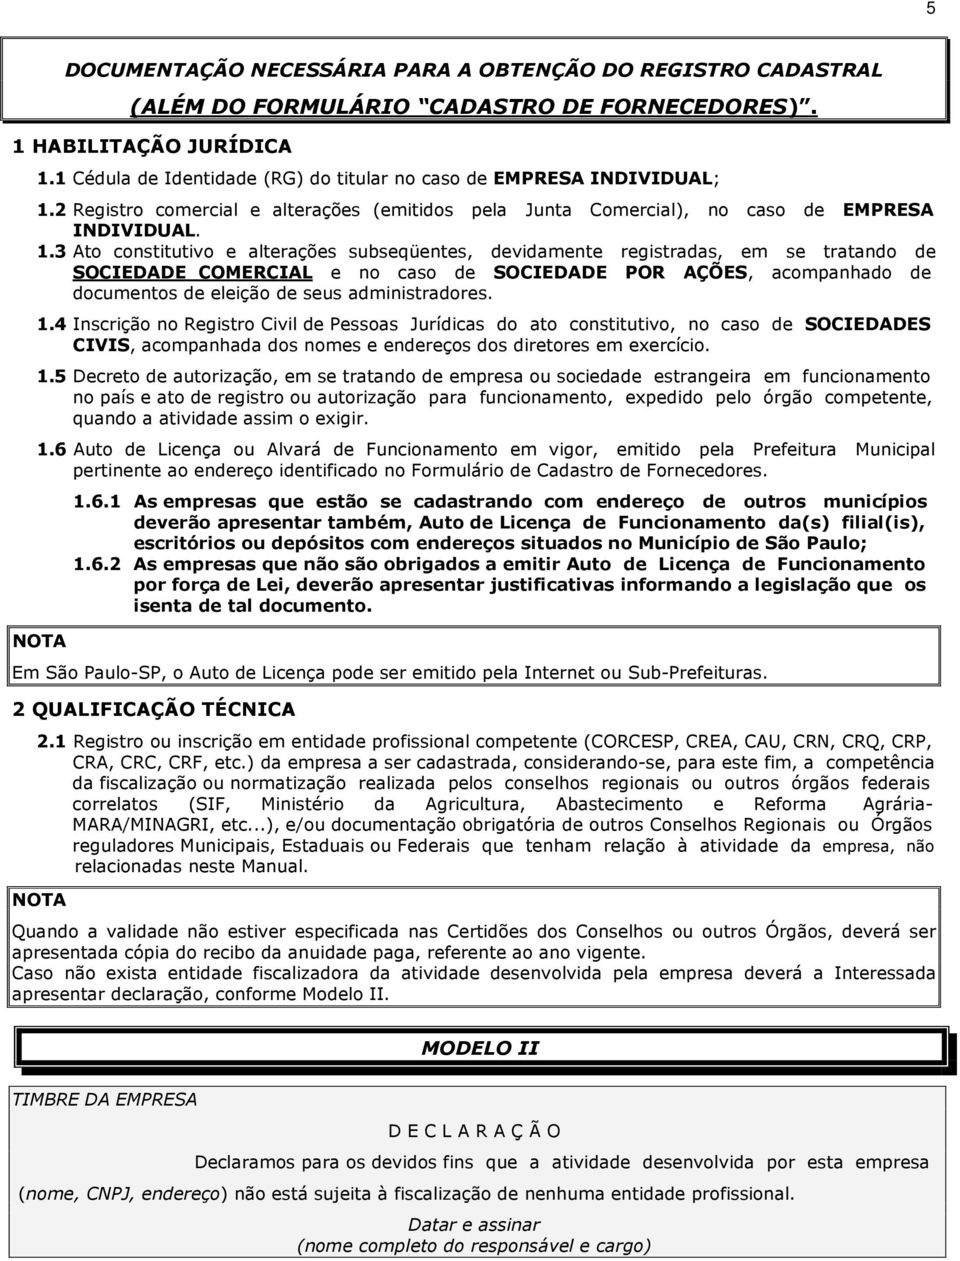 2 Registro comercial e alterações (emitidos pela Junta Comercial), no caso de EMPRESA INDIVIDUAL. 1.